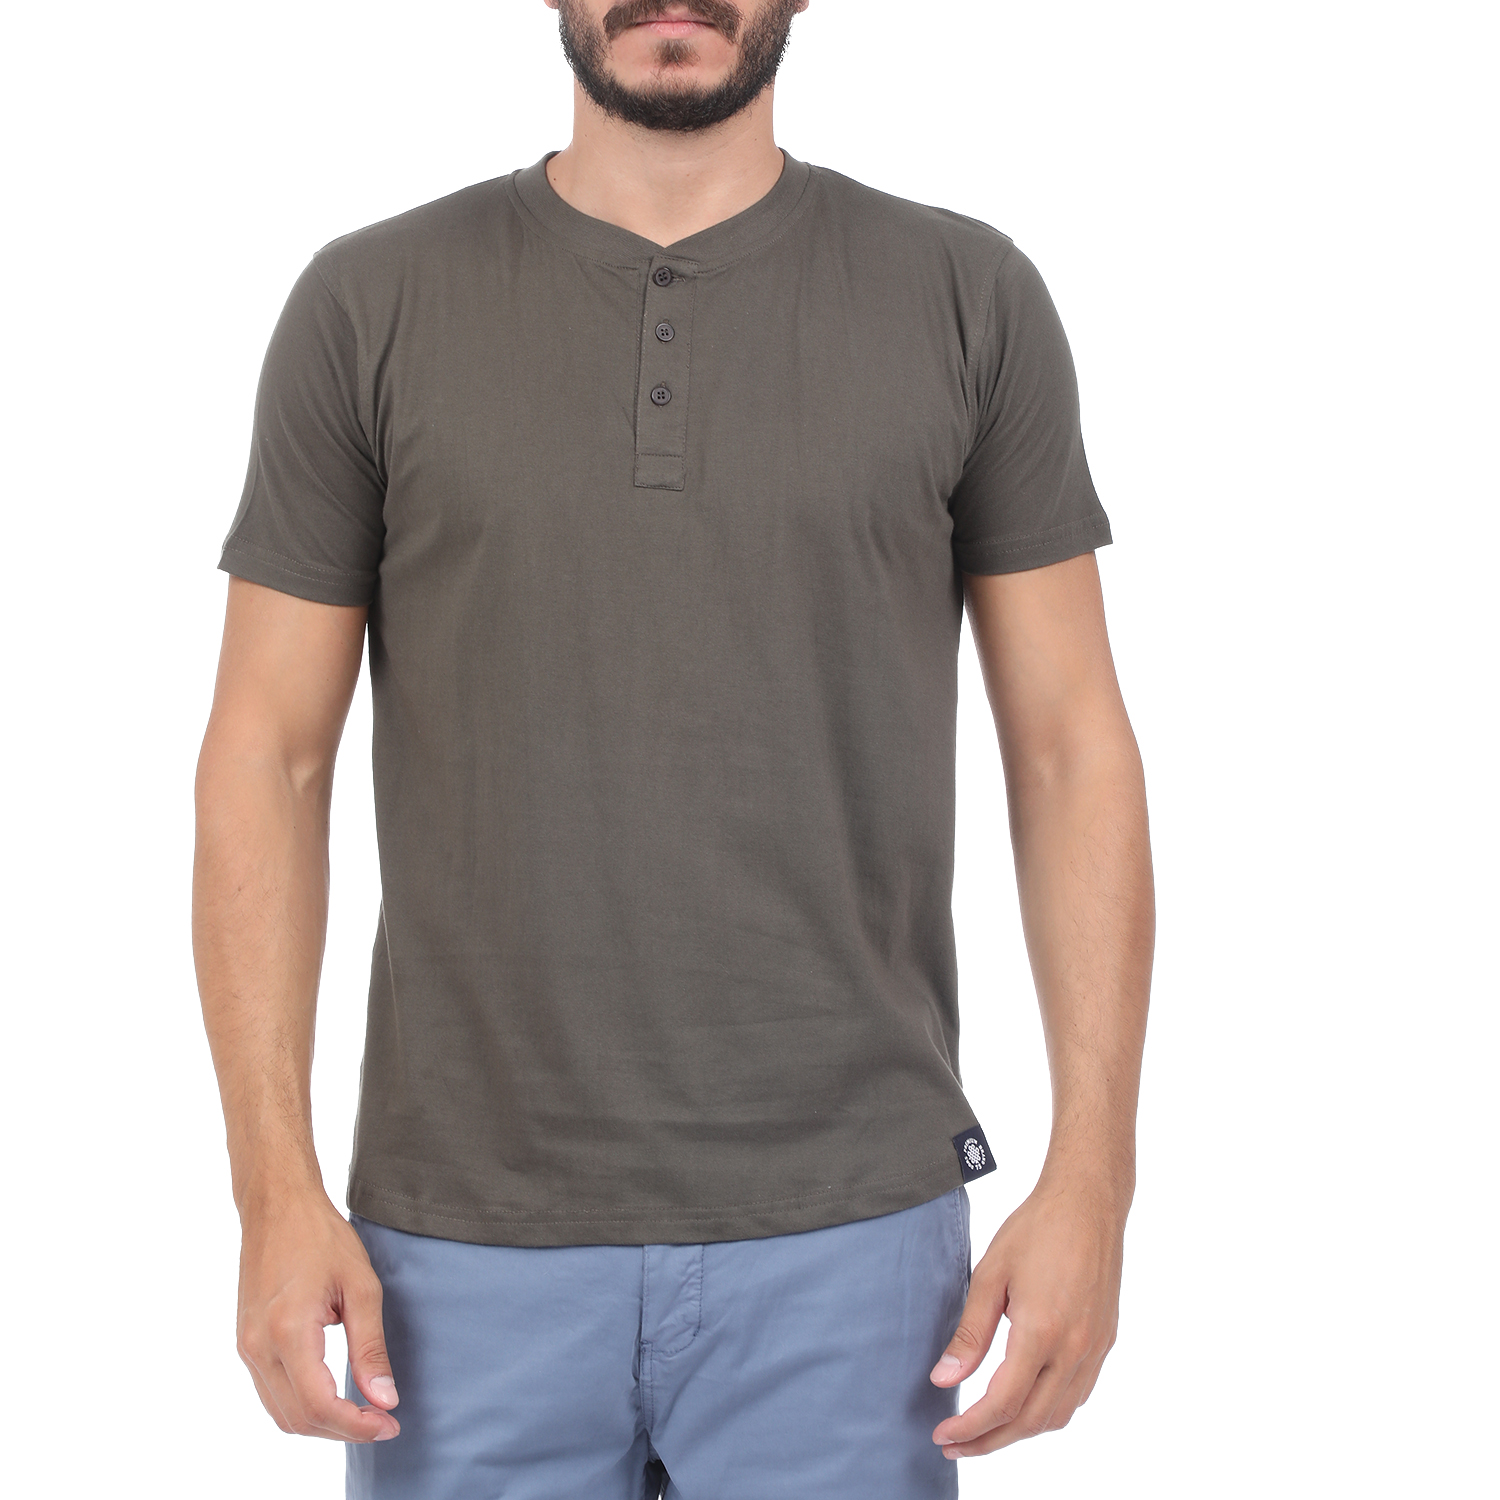 Ανδρικά/Ρούχα/Μπλούζες/Κοντομάνικες DORS - Ανδρική μπλούζα DORS χακί